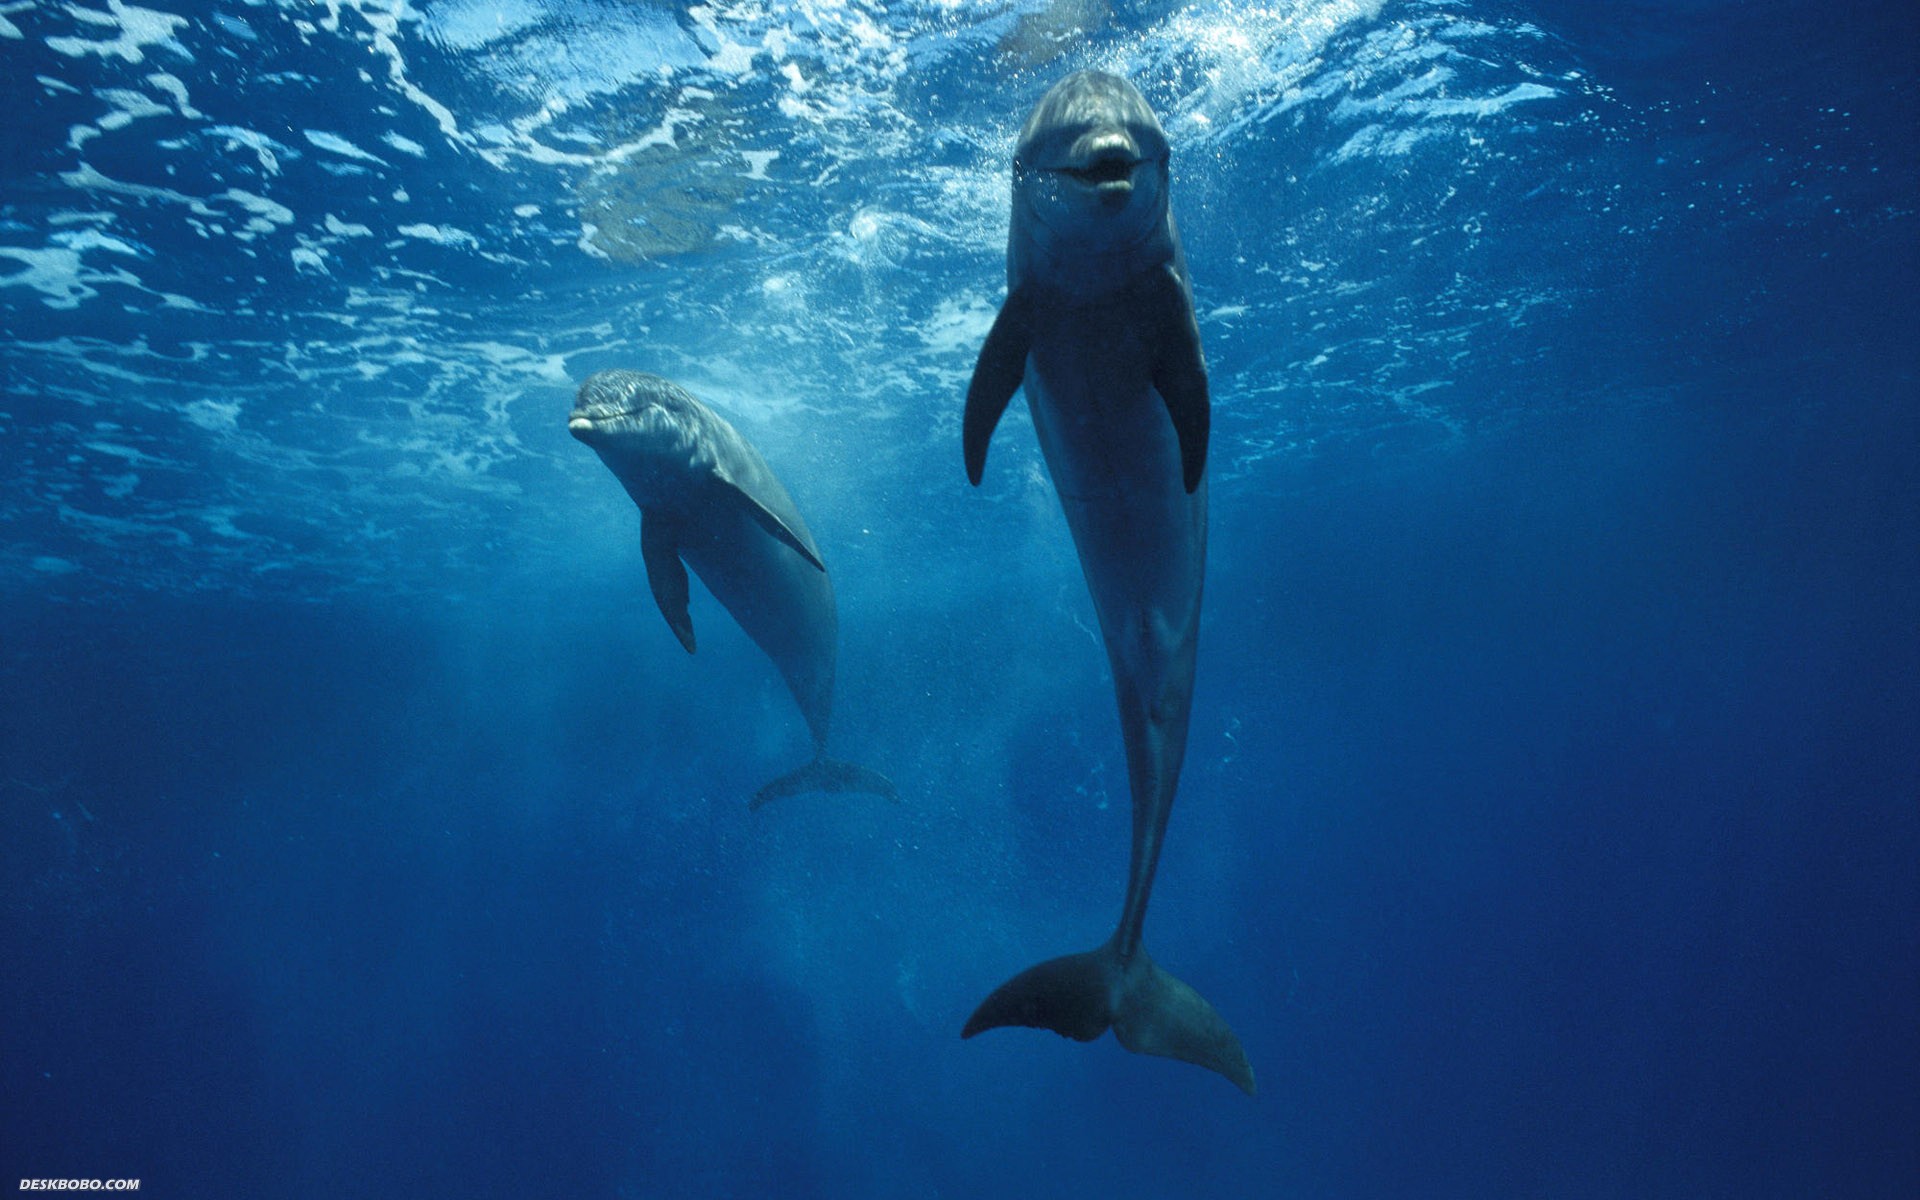  http://mysticseaangel.com/wp-content/uploads/2012/01/dolphins_1920x1200_278-wide.jpg 